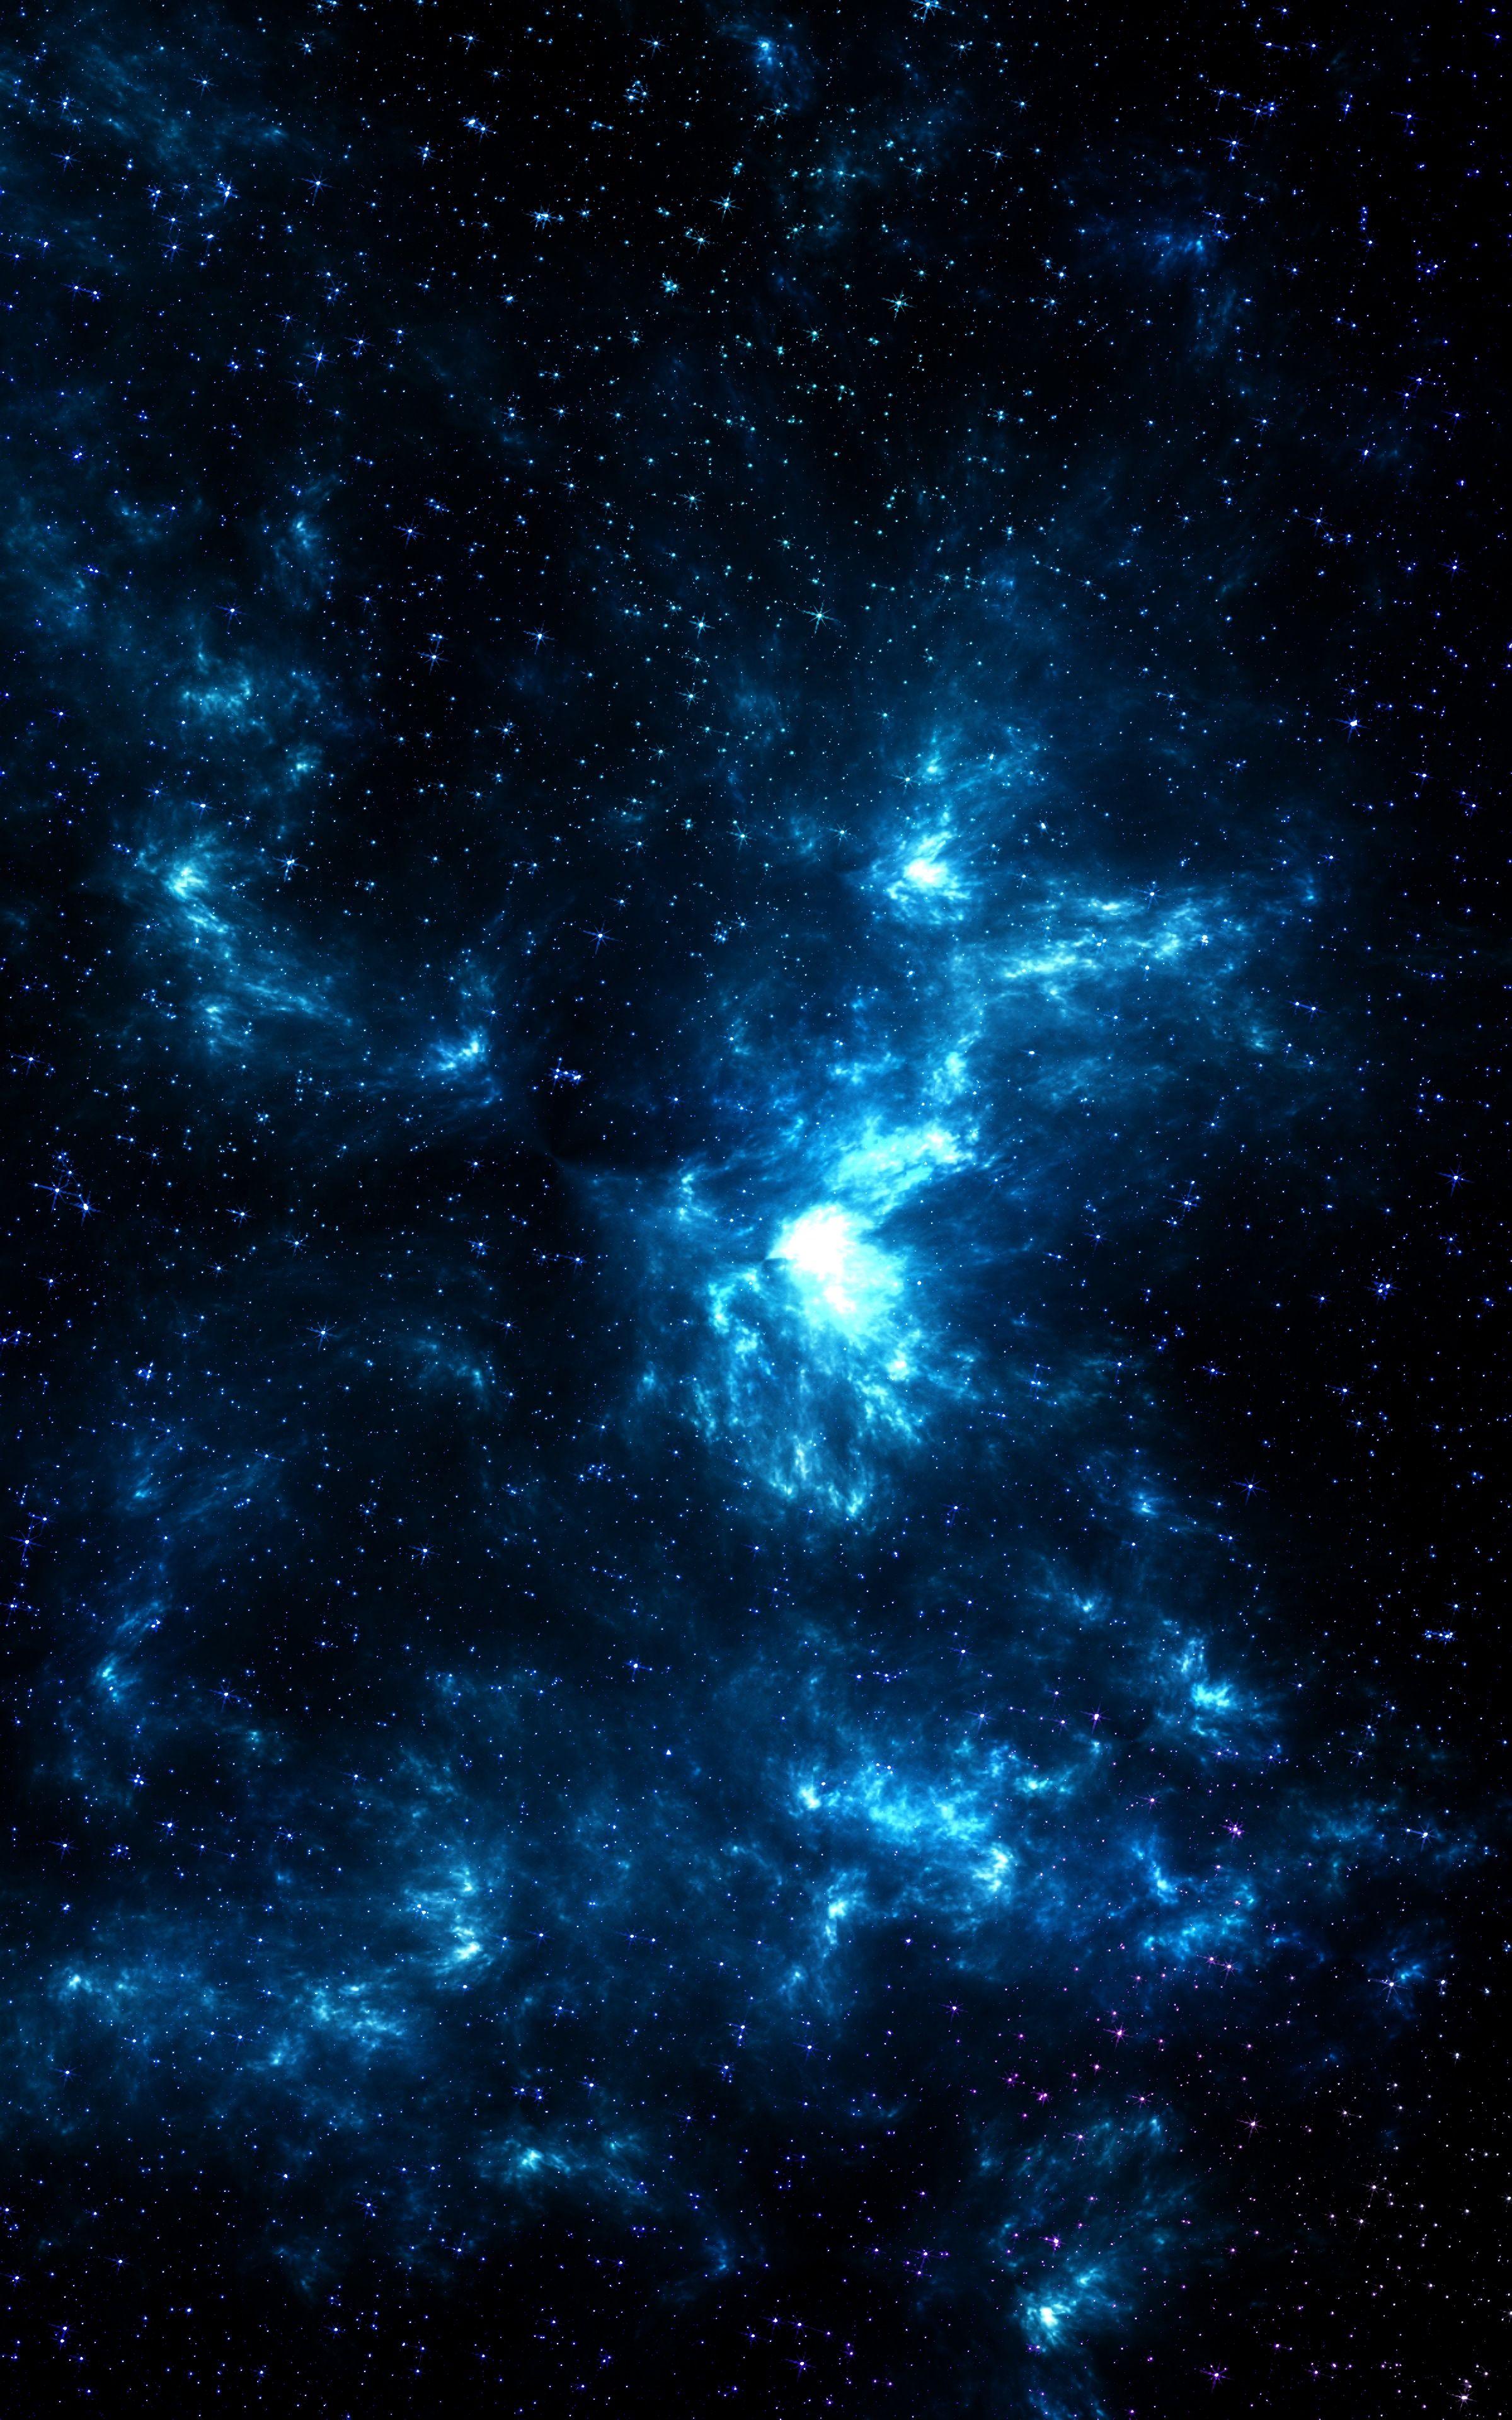 Black and Blue Galaxy Wallpapers - Top Những Hình Ảnh Đẹp